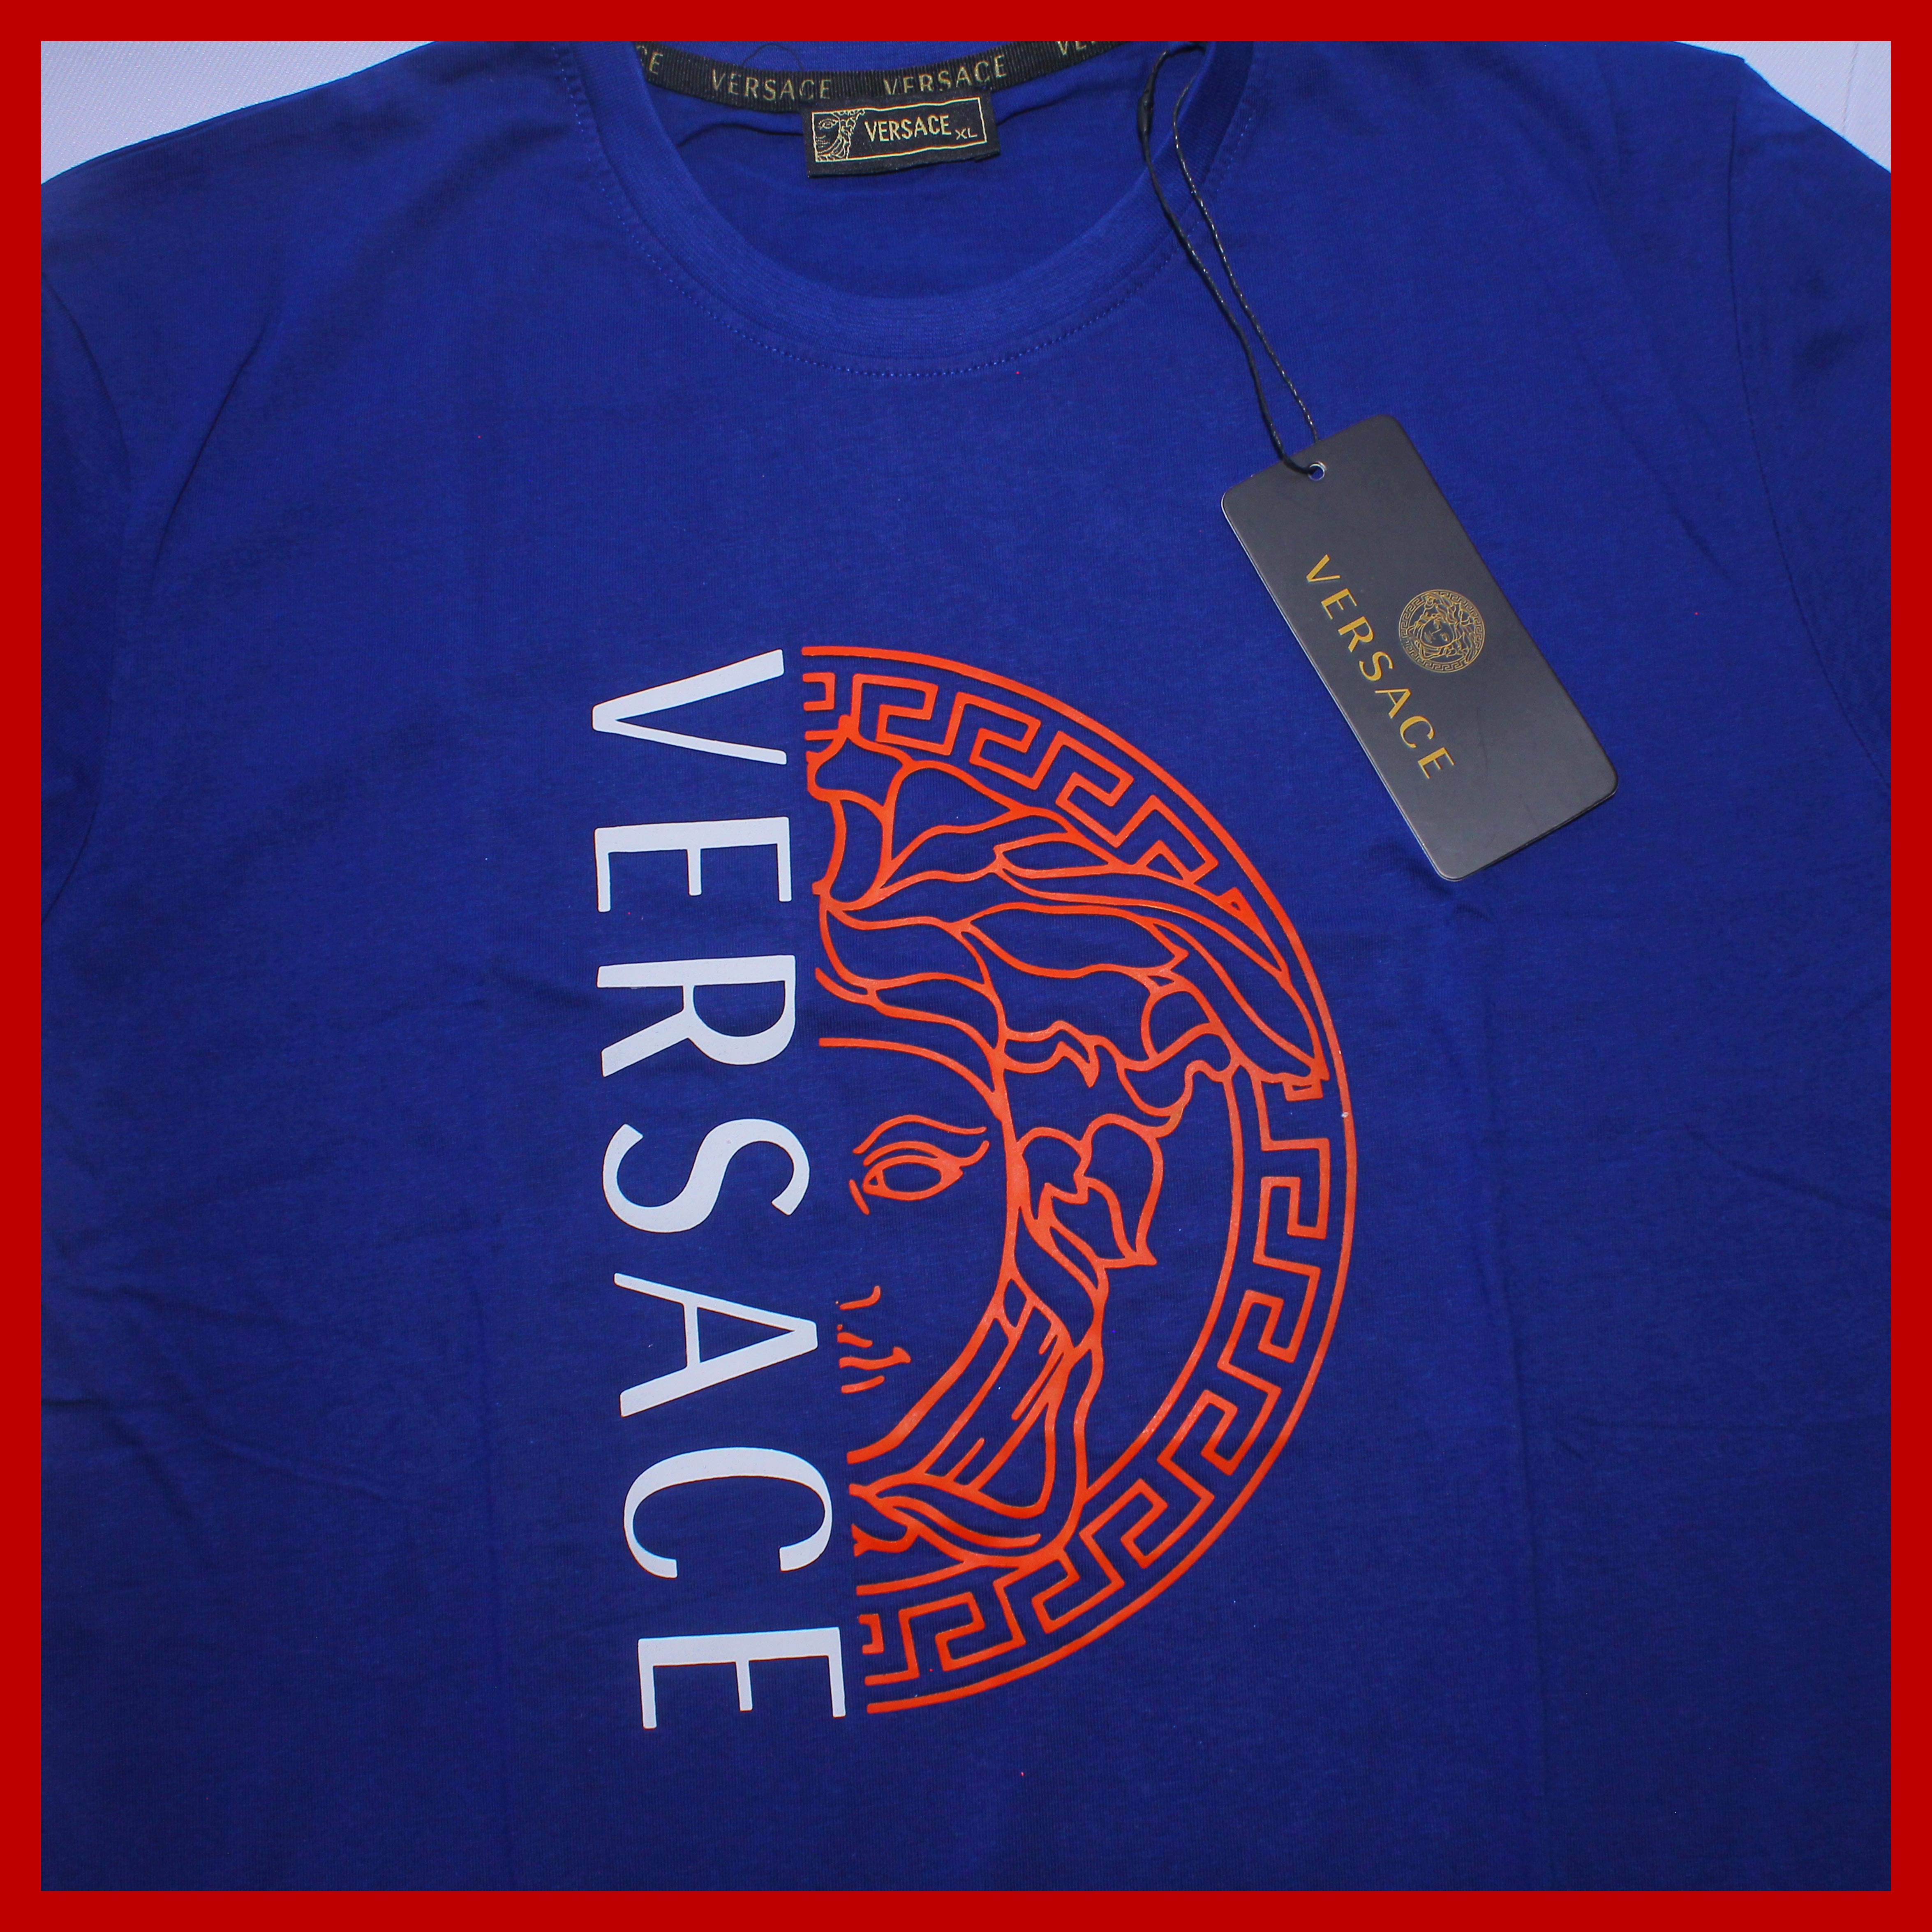 versace price t shirt